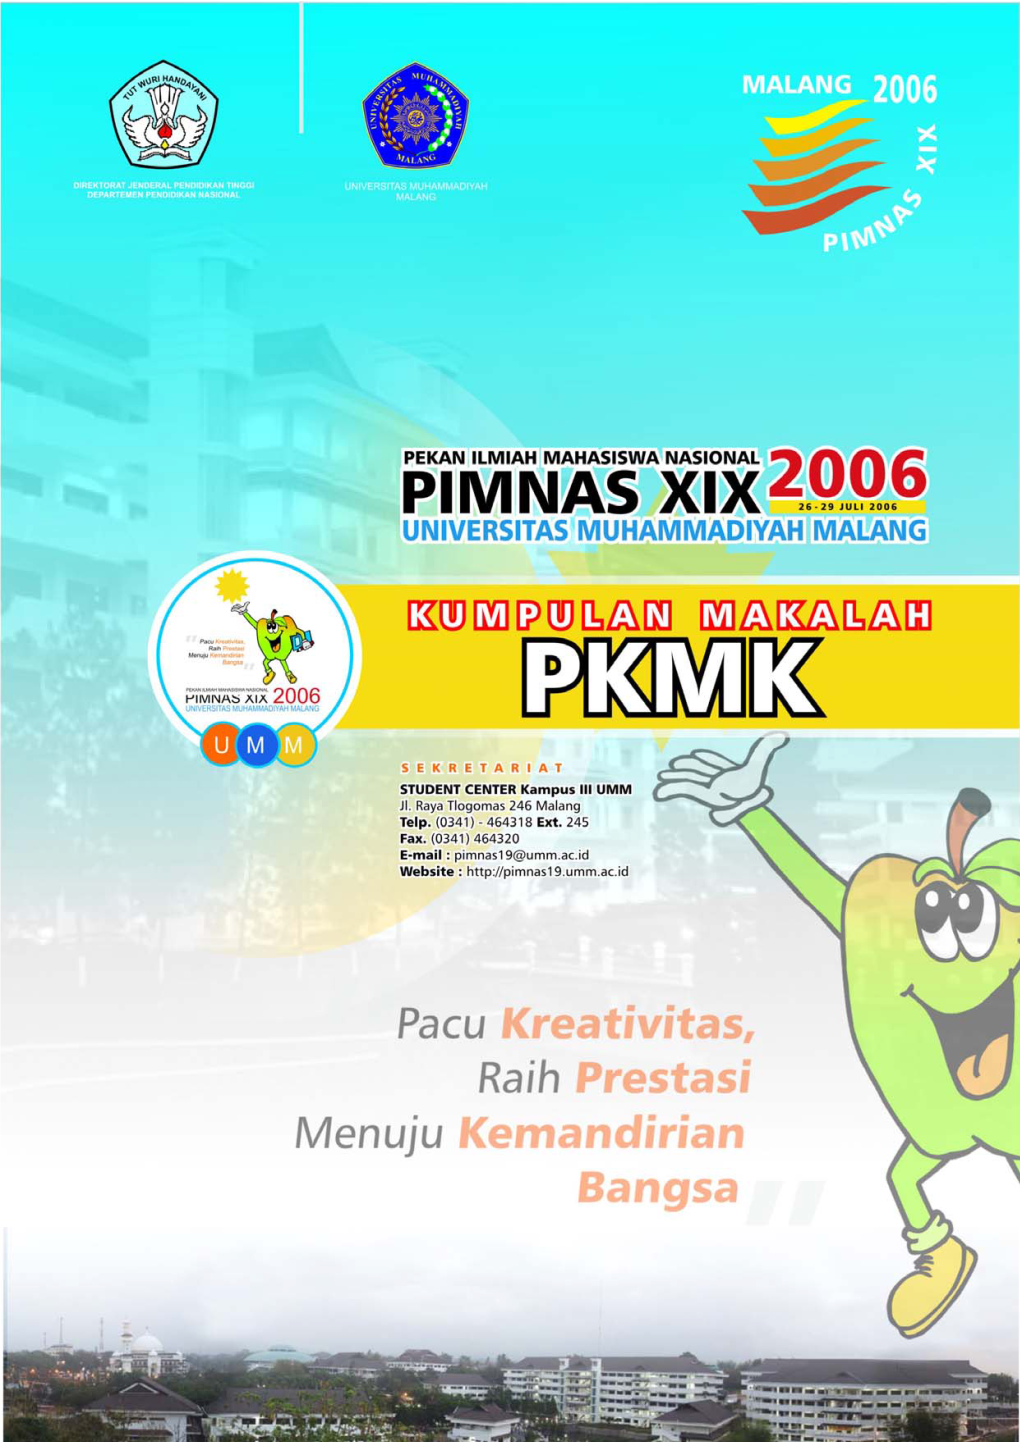 Kumpulan Makalah PKMK Dalam Pimnas XIX 2006 UMM Malang